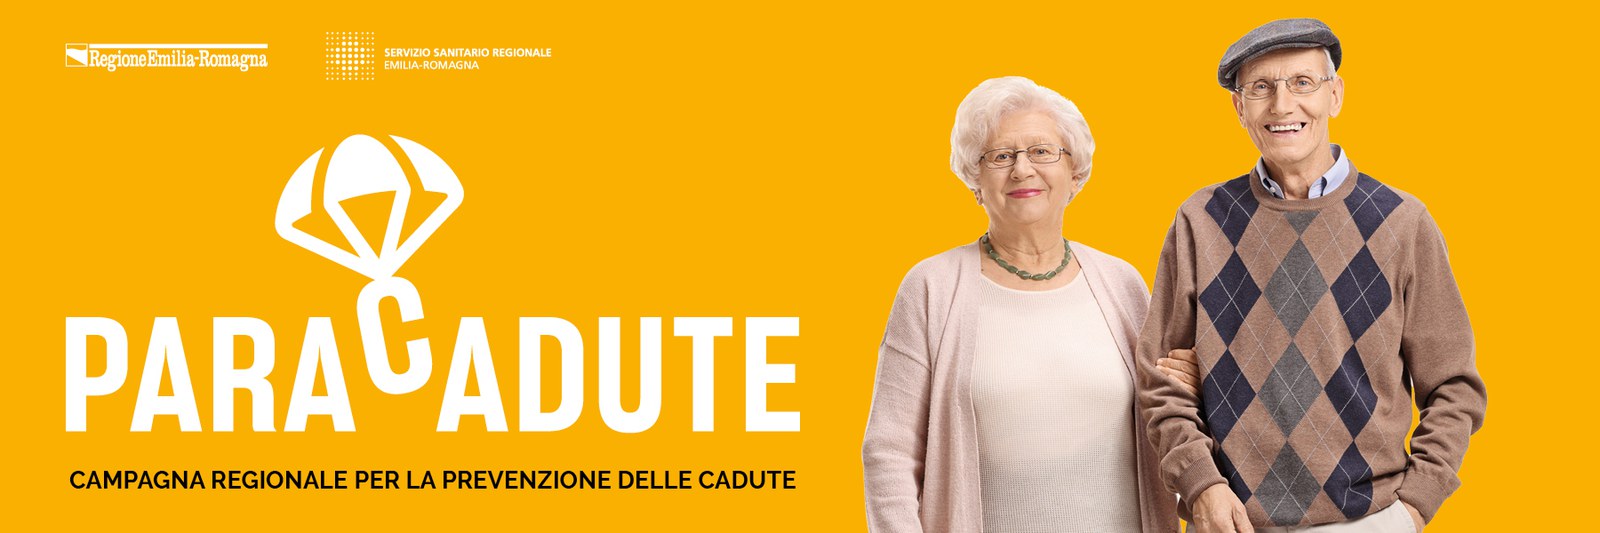 La campagna informativa della Regione Emilia-Romagna